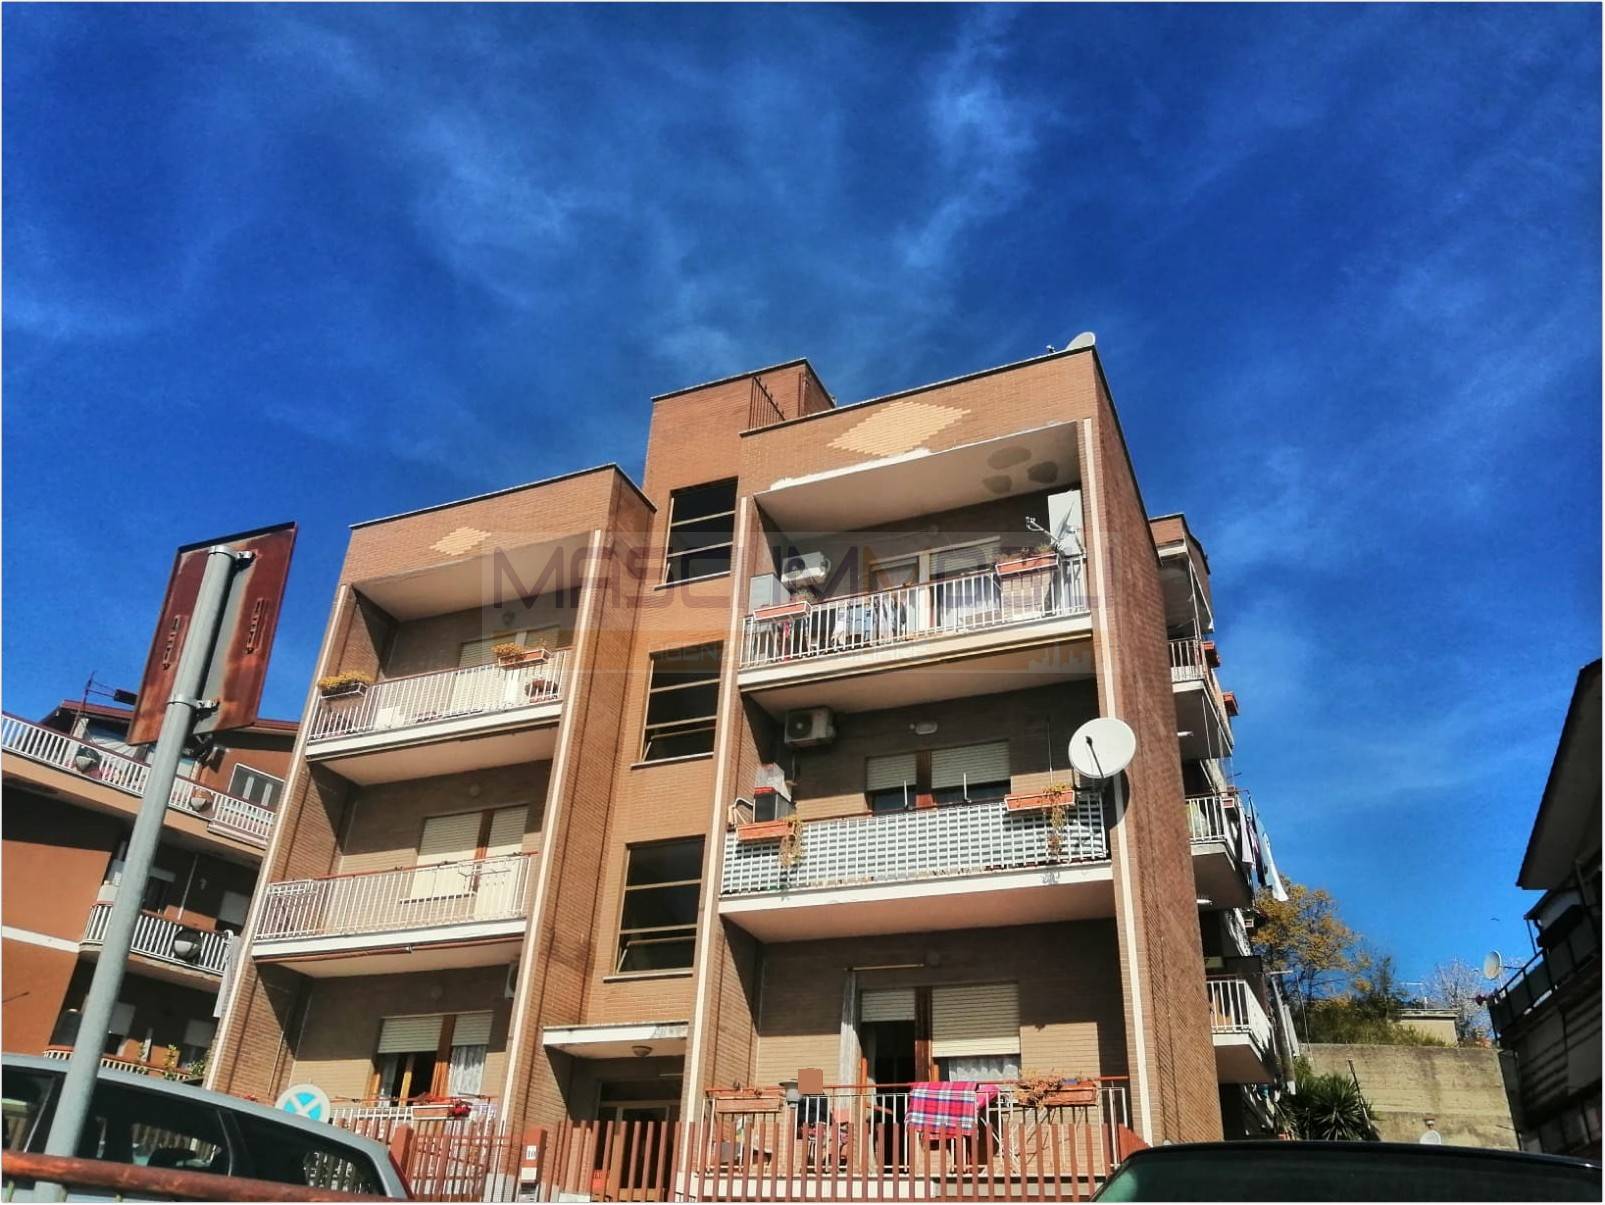 Appartamento in vendita a Civitella San Paolo, 3 locali, prezzo € 60.000 | PortaleAgenzieImmobiliari.it